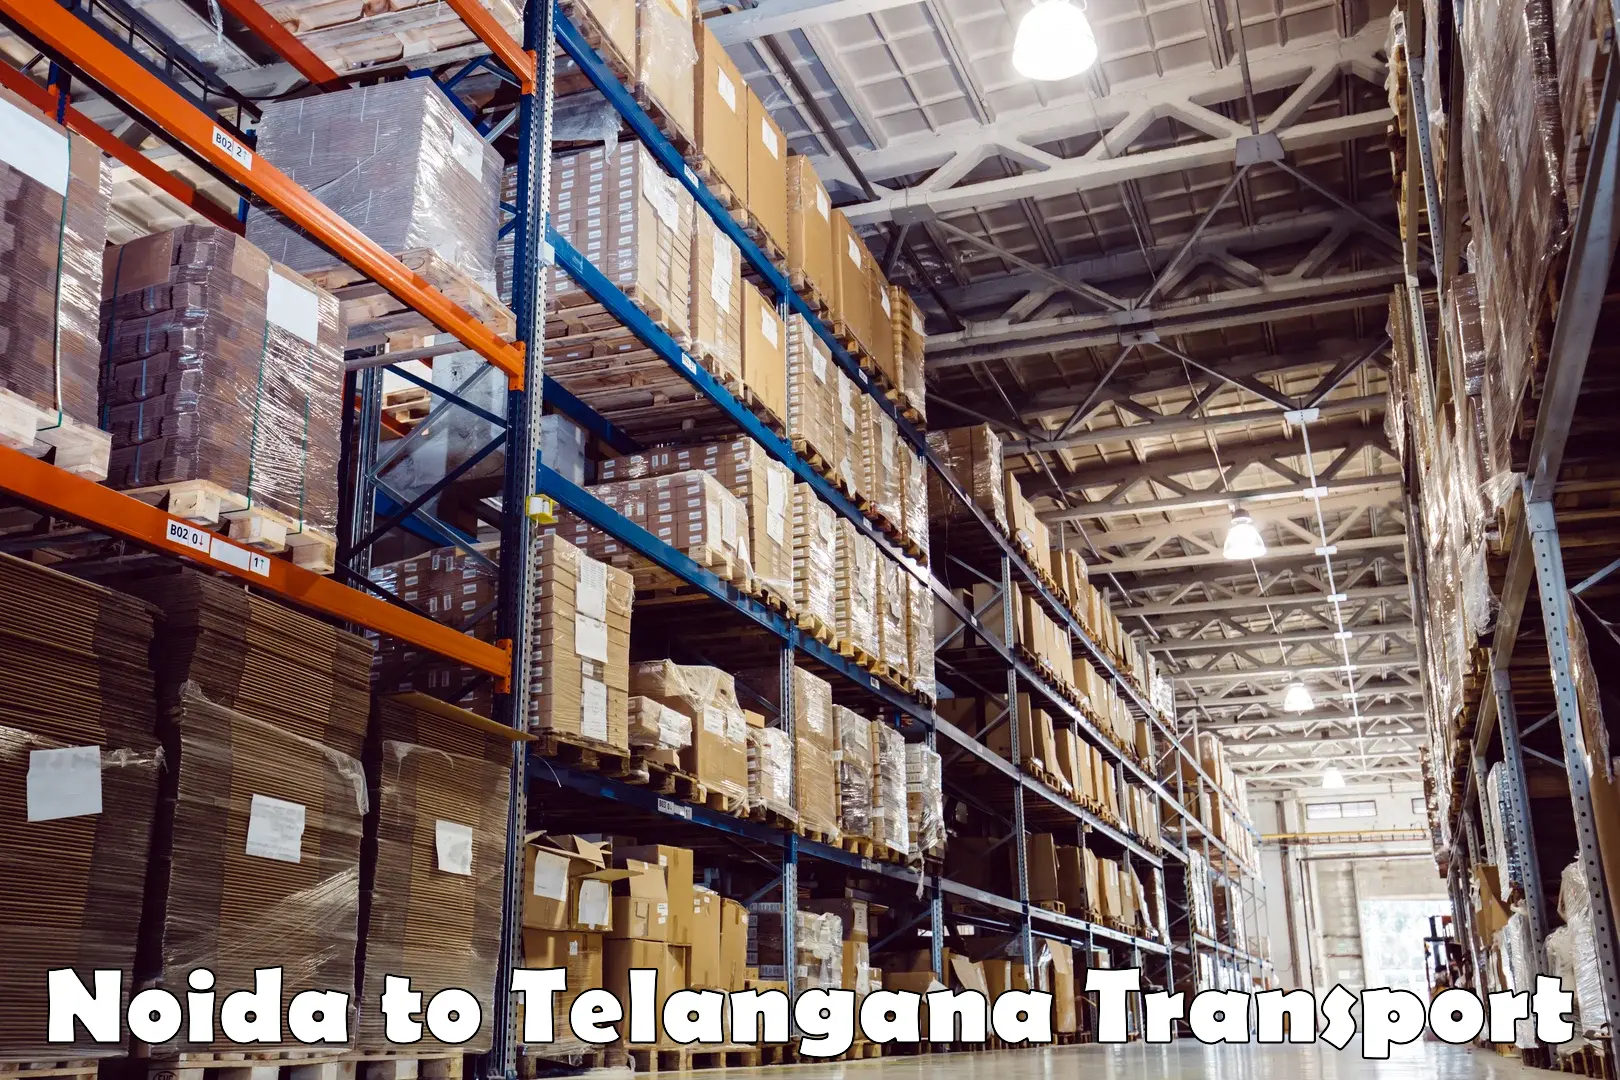 Furniture transport service Noida to Telangana